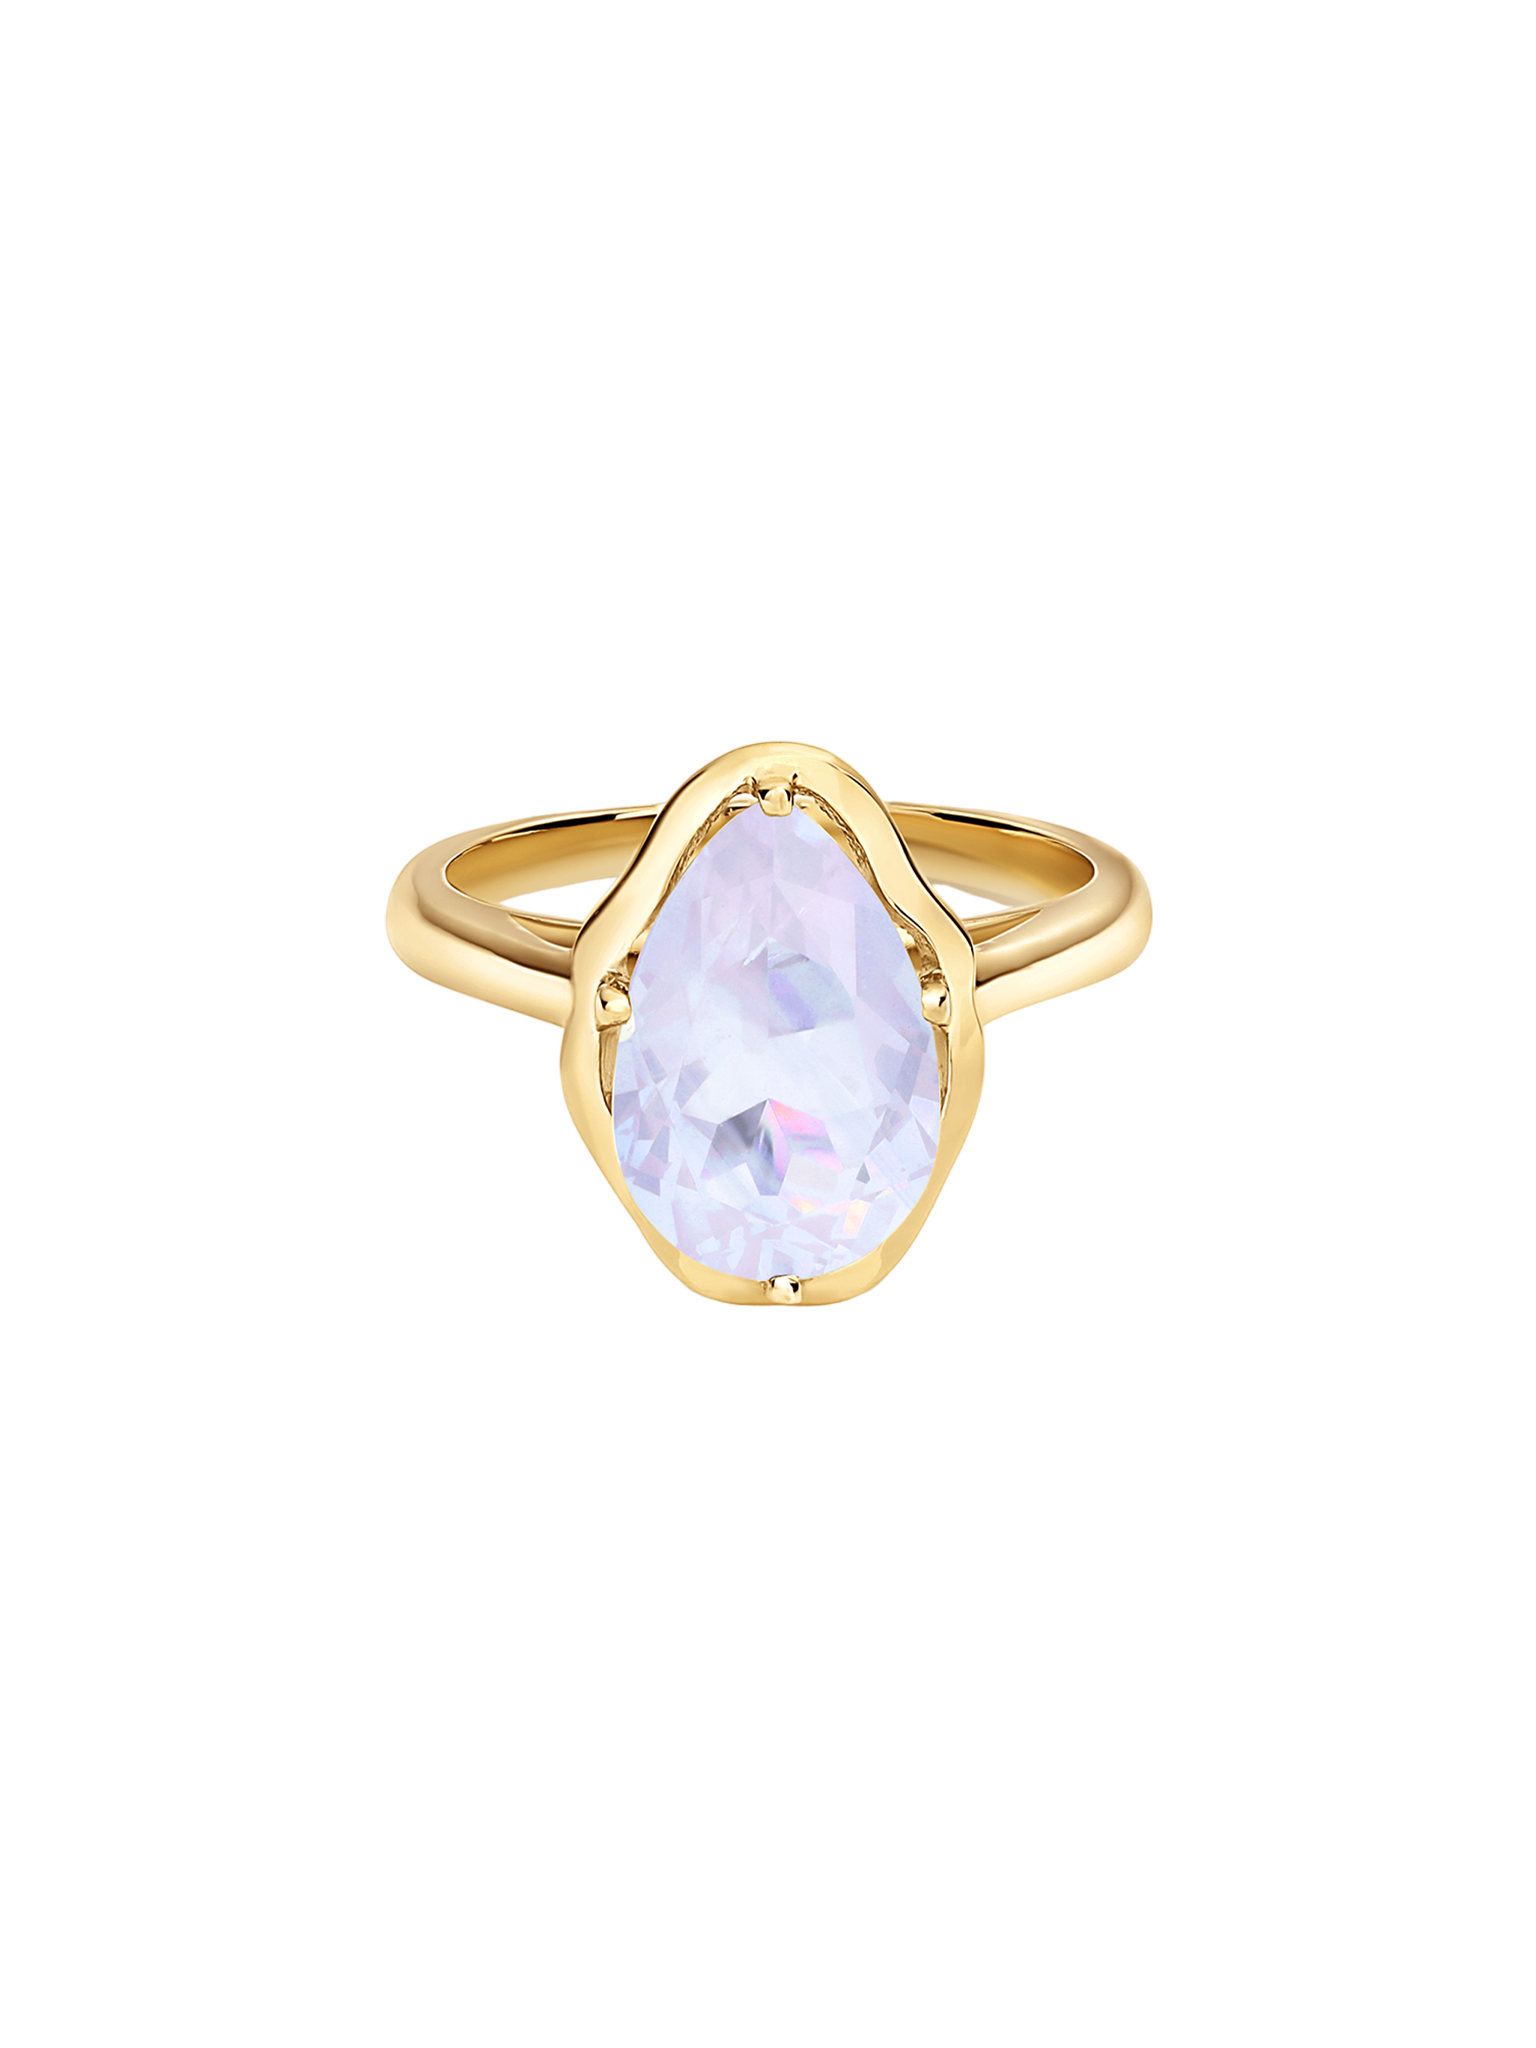 Glow ring lavender quartz